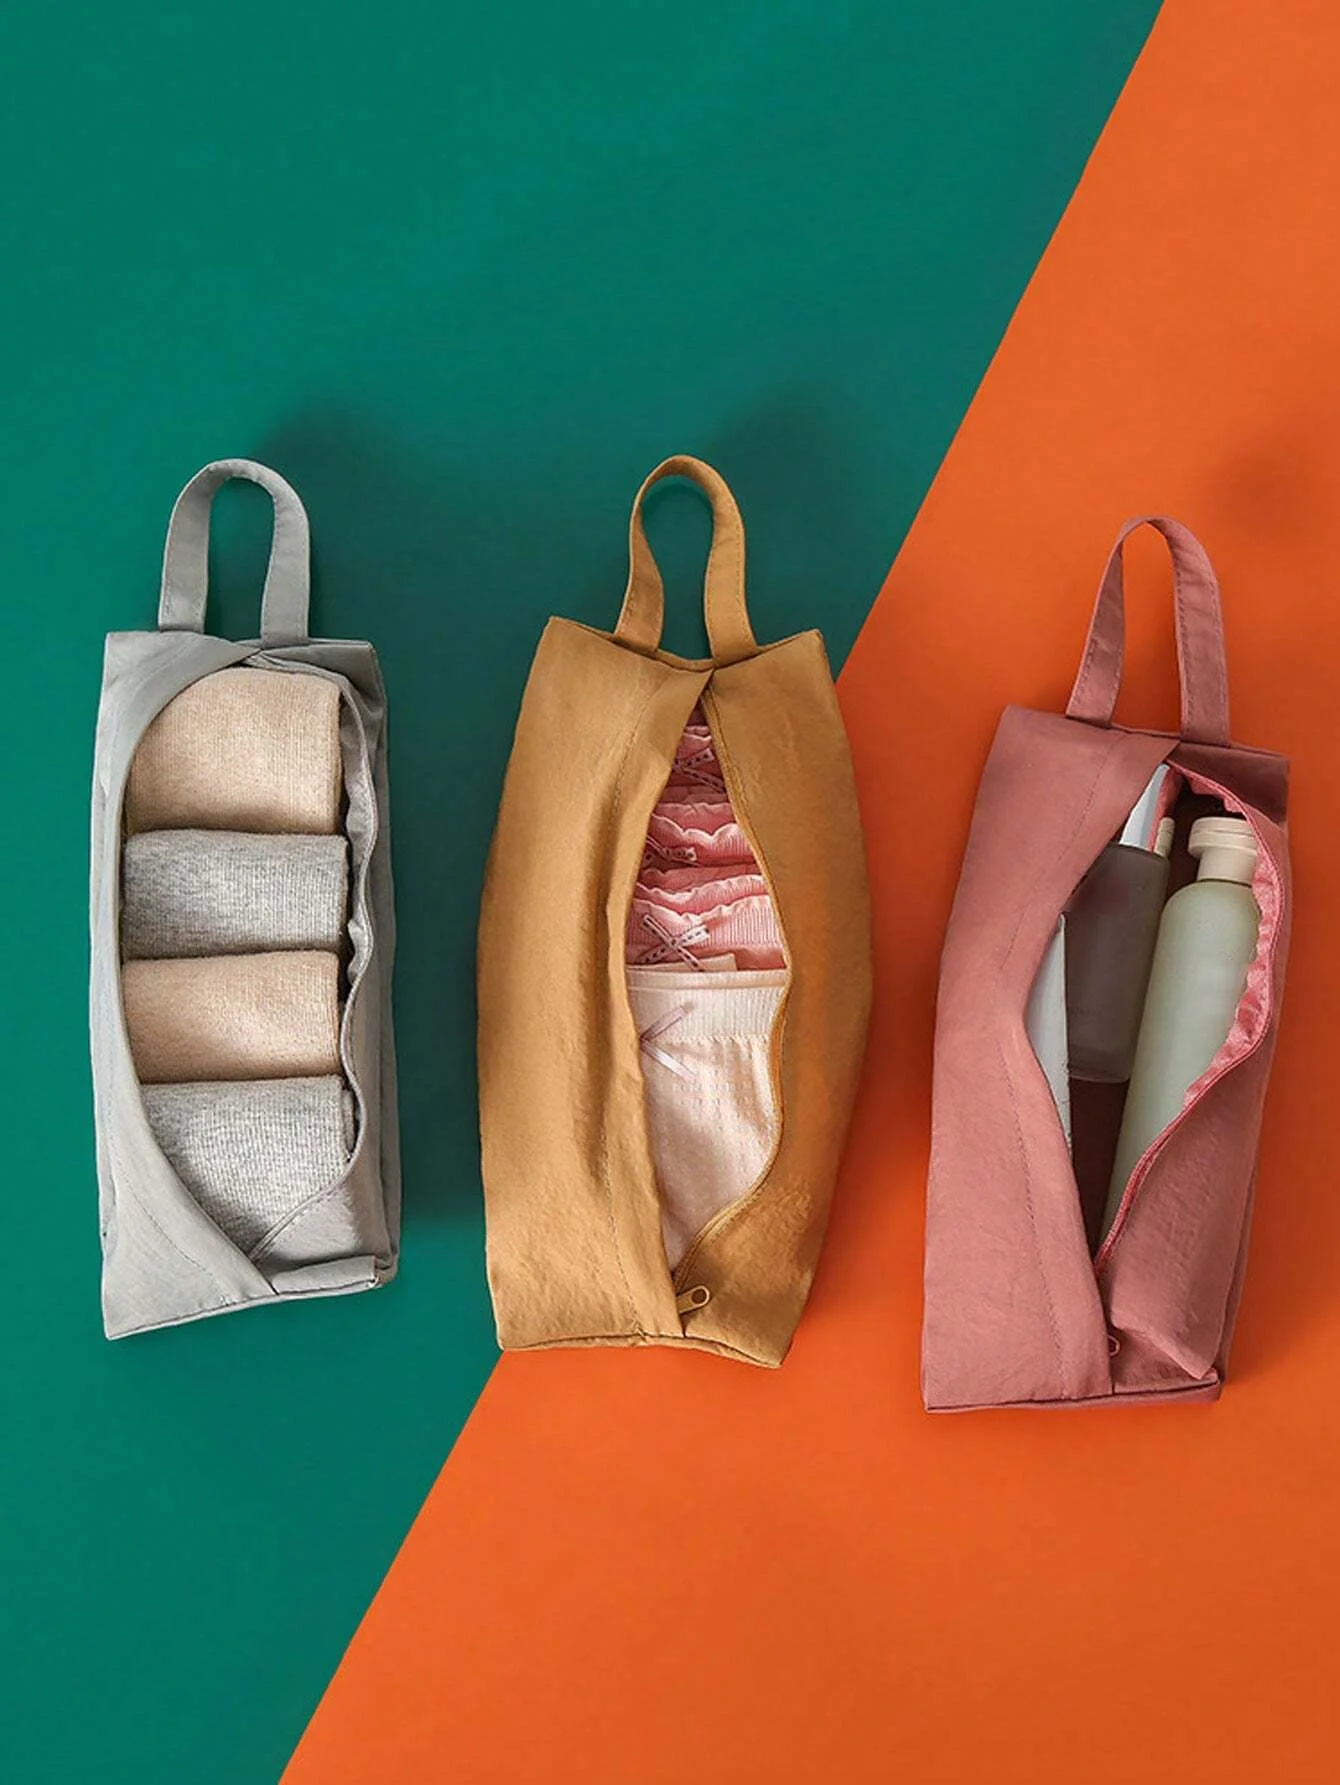 1db Nagy kapacitású hordozható utazásszervező kis táska, összecsukható zokni, fehérnemű tároló táska, kézmosó kendő, sminktáska - 5